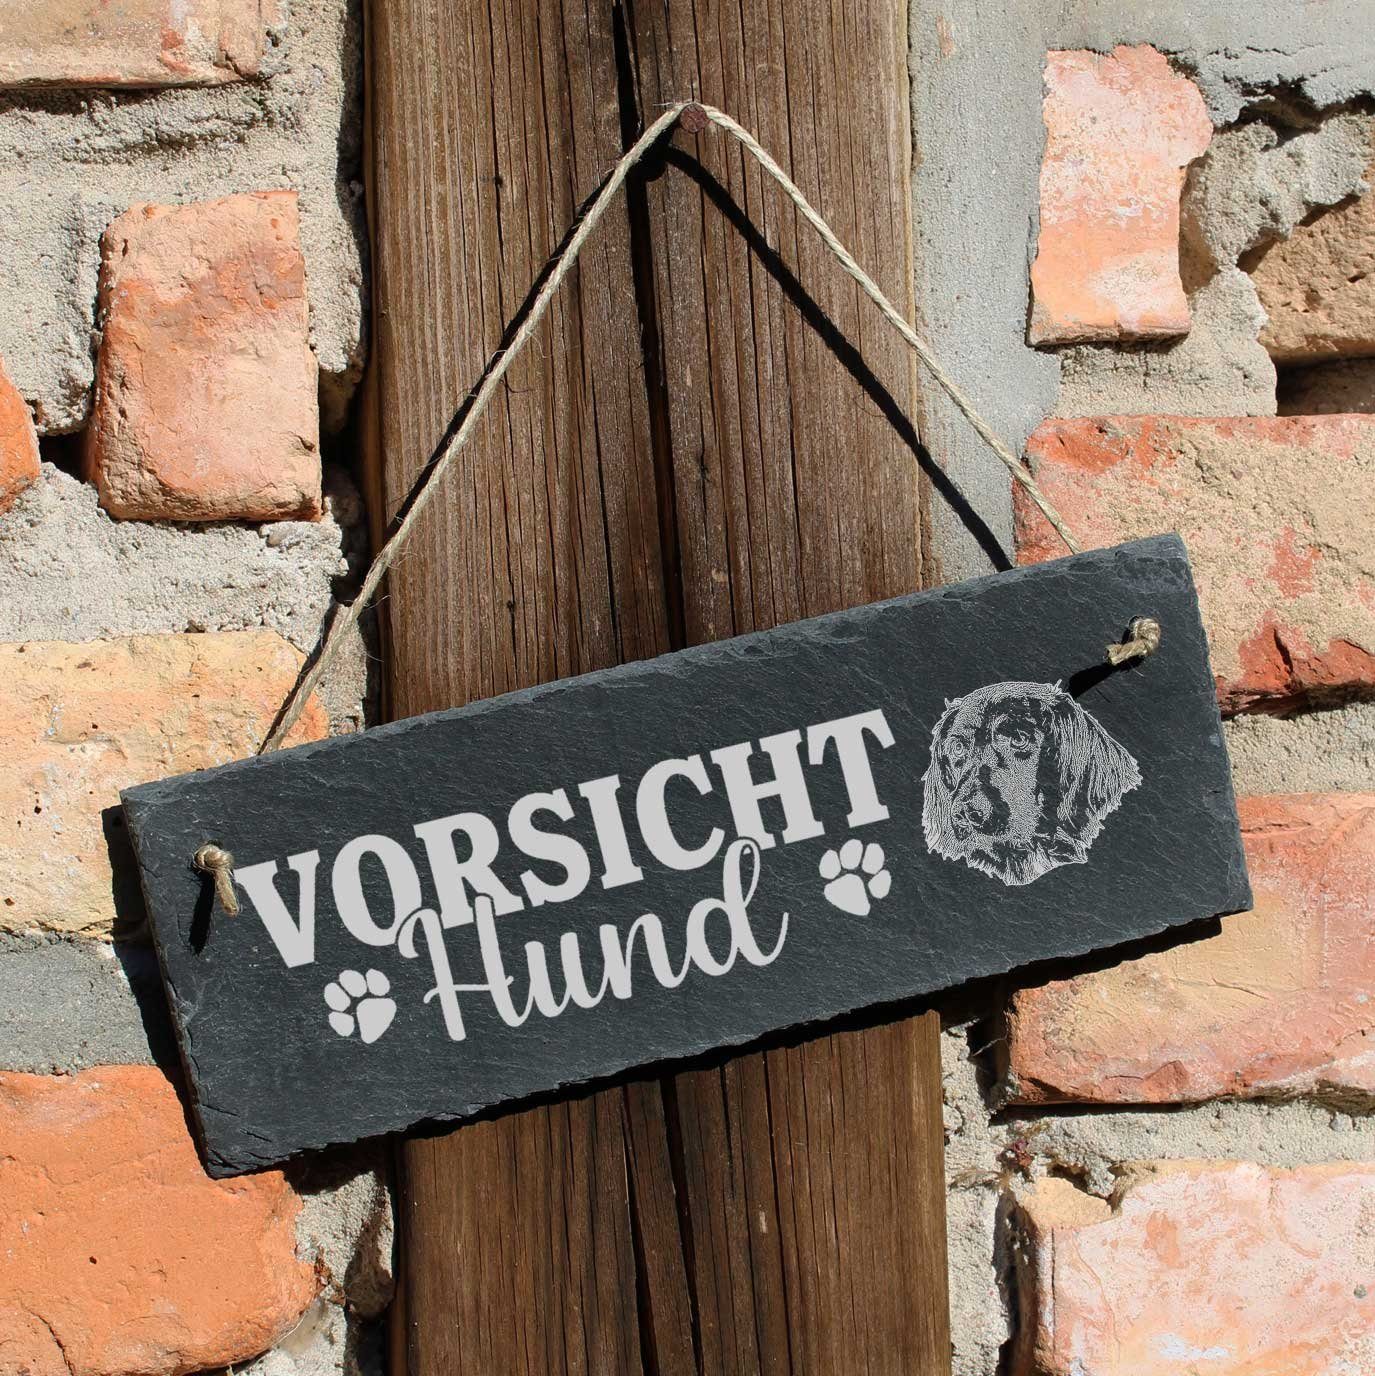 Grosser Münsterländer 22x8cm Dekolando Hund Vorsicht Hängedekoration Schild